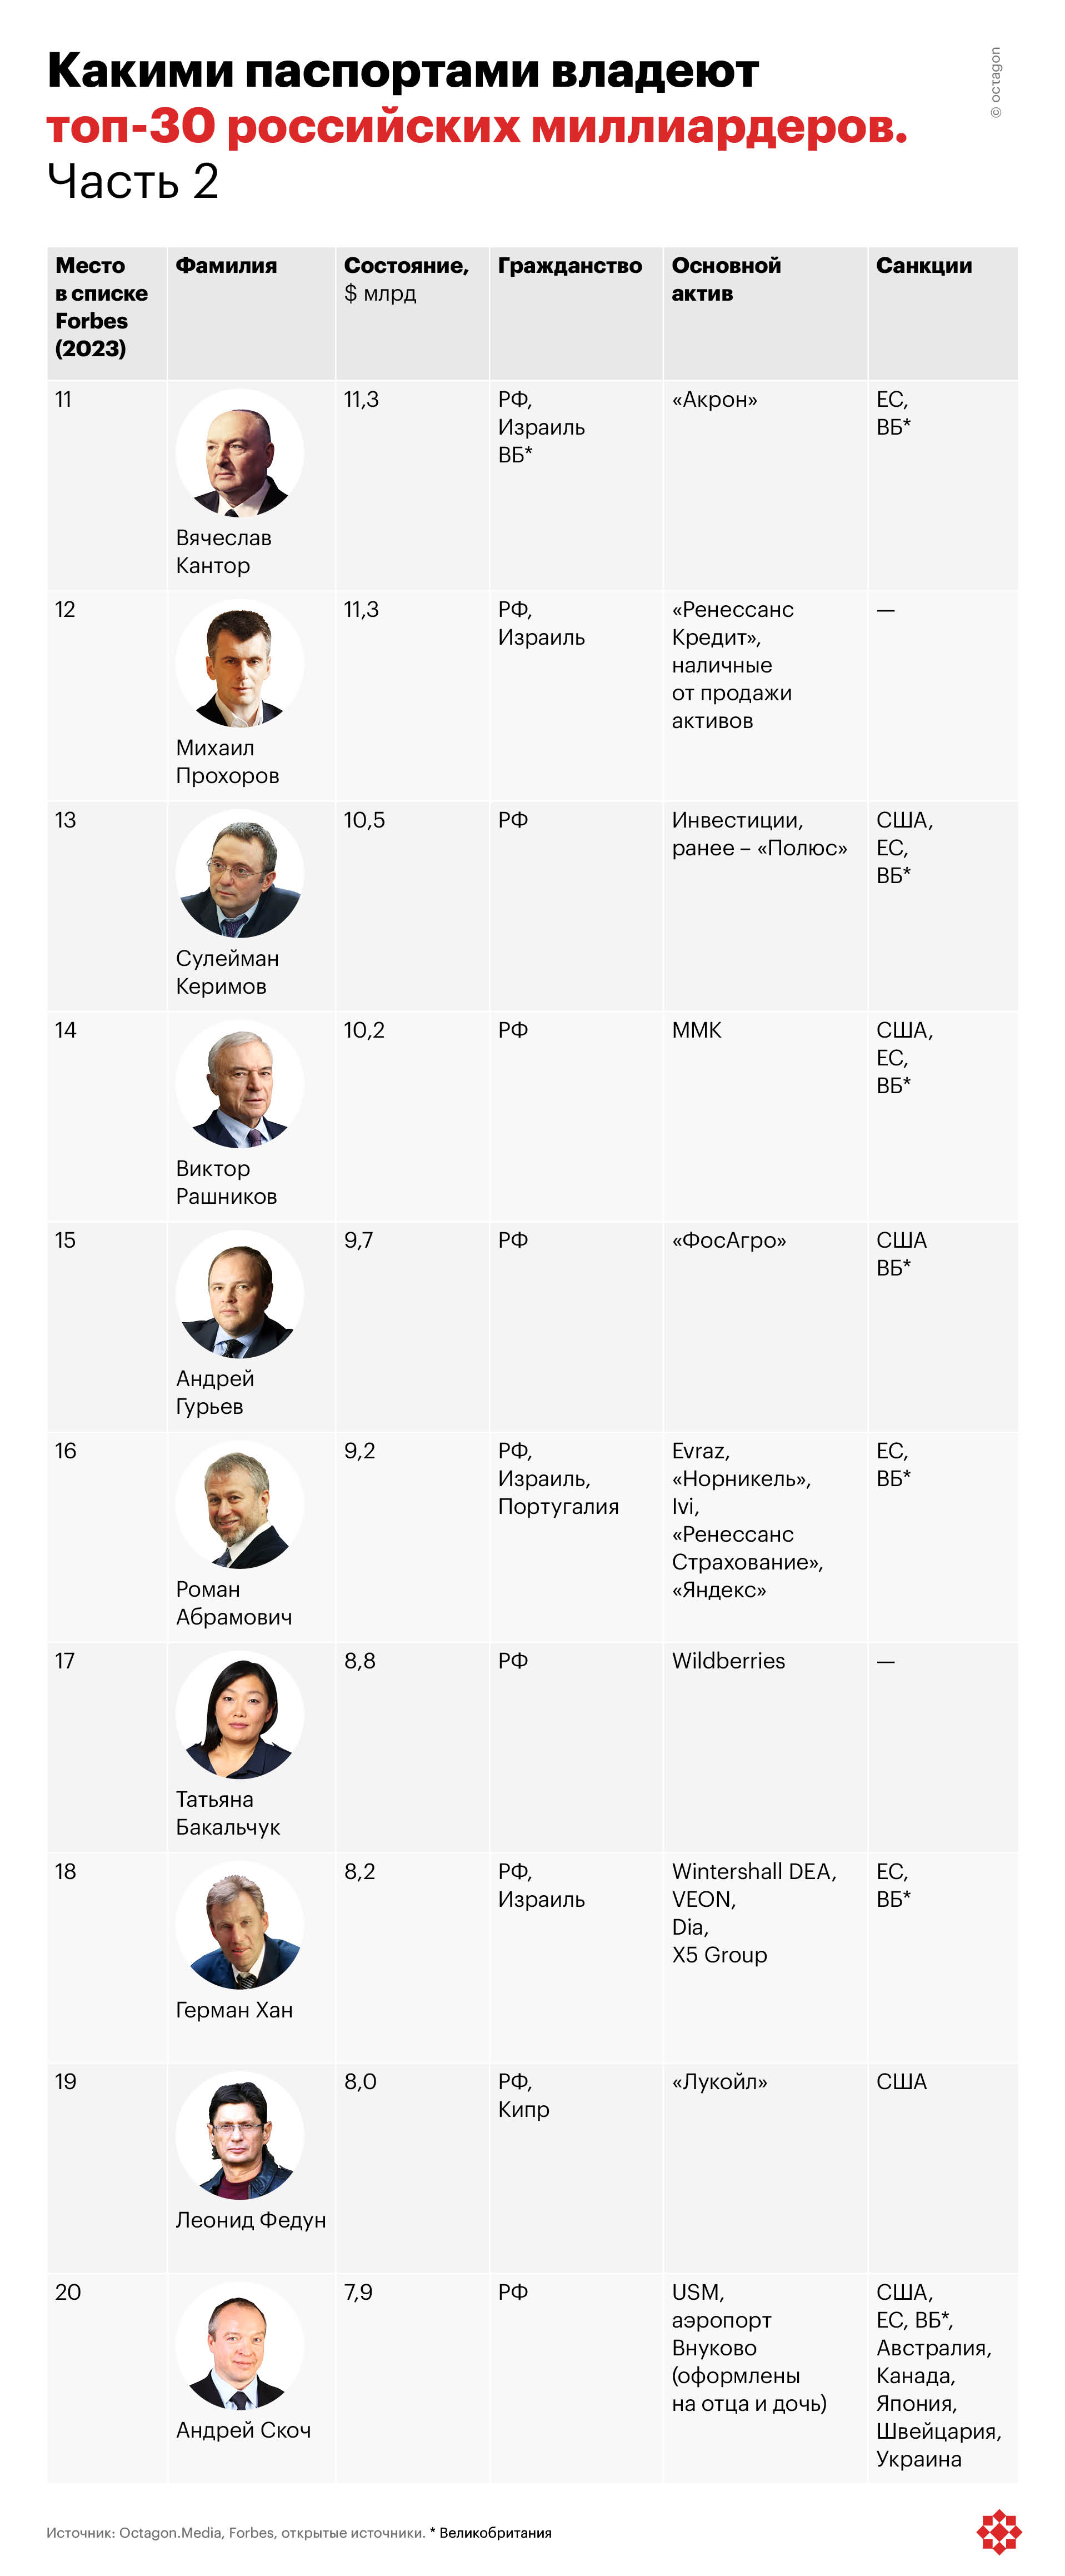 Какими паспортами владеют топ-30 российских миллиардеров. Часть 2.